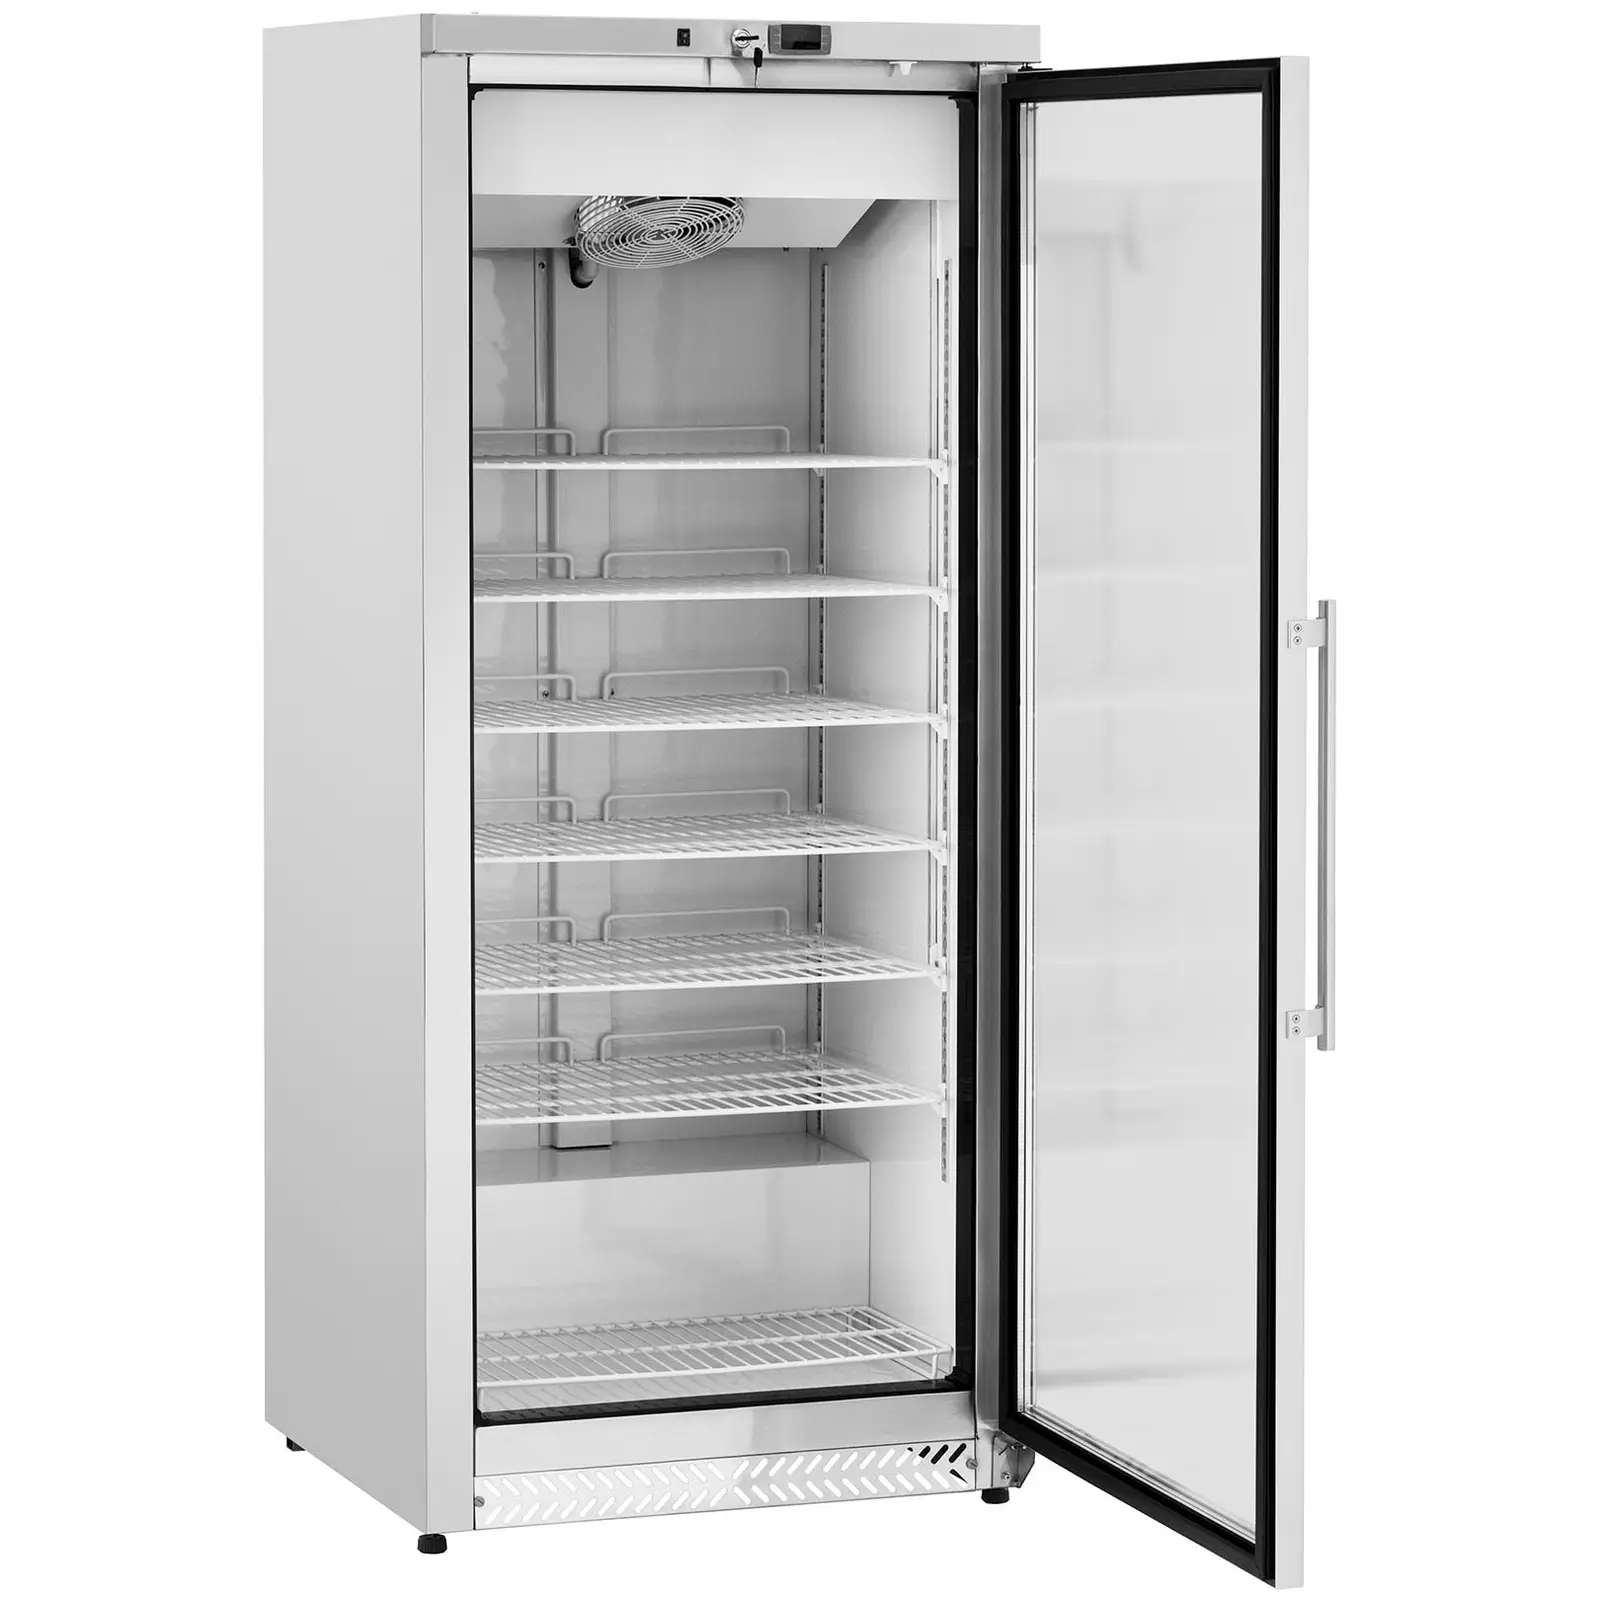 B-termék Fagyasztószekrény - 580 l - Royal Catering - üvegajtó - Ezüst - hűtőközeg R290